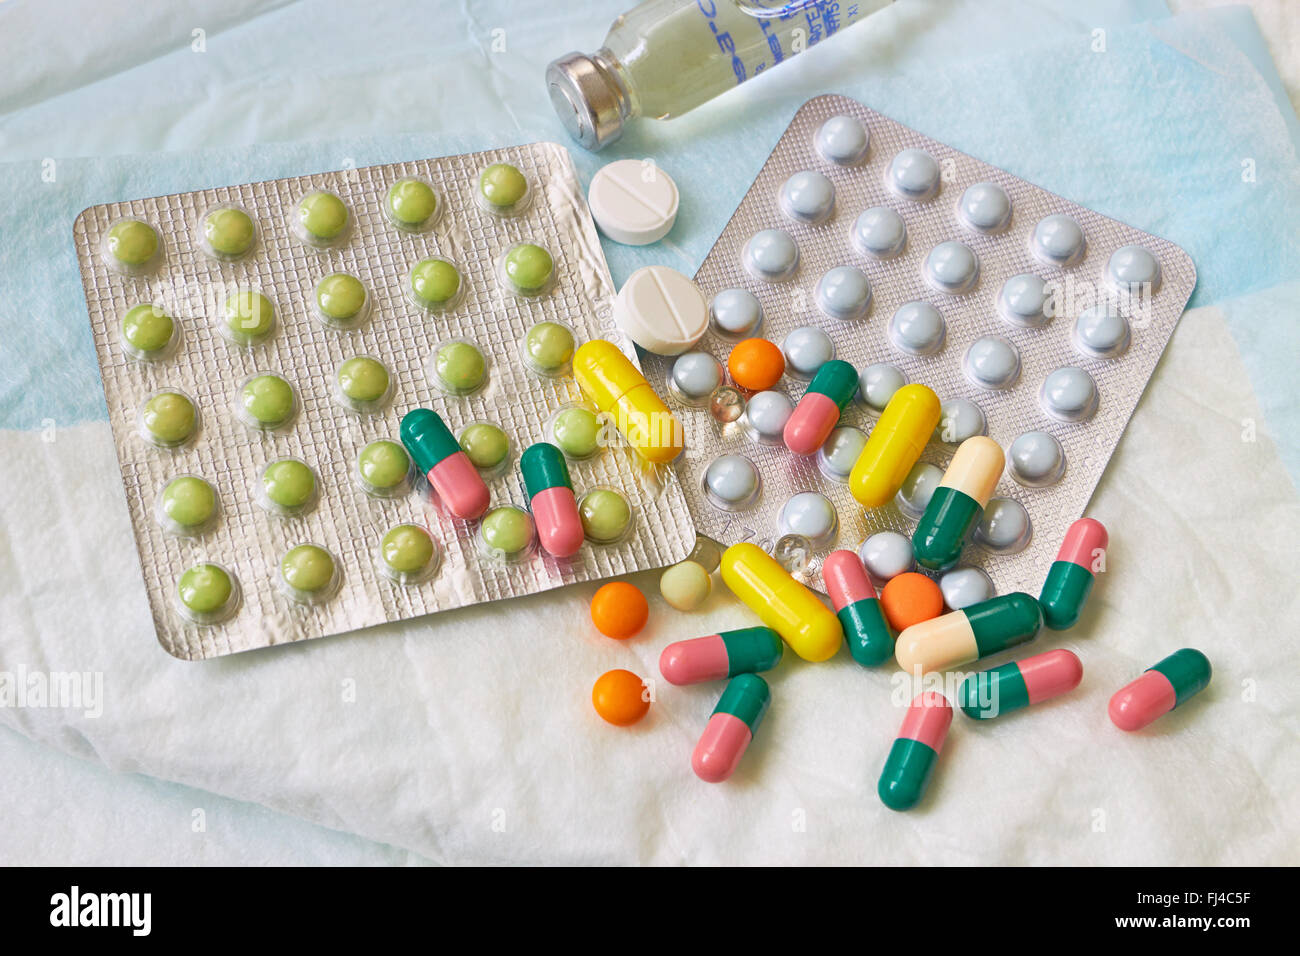 Medical píldoras con un pañal Foto de stock